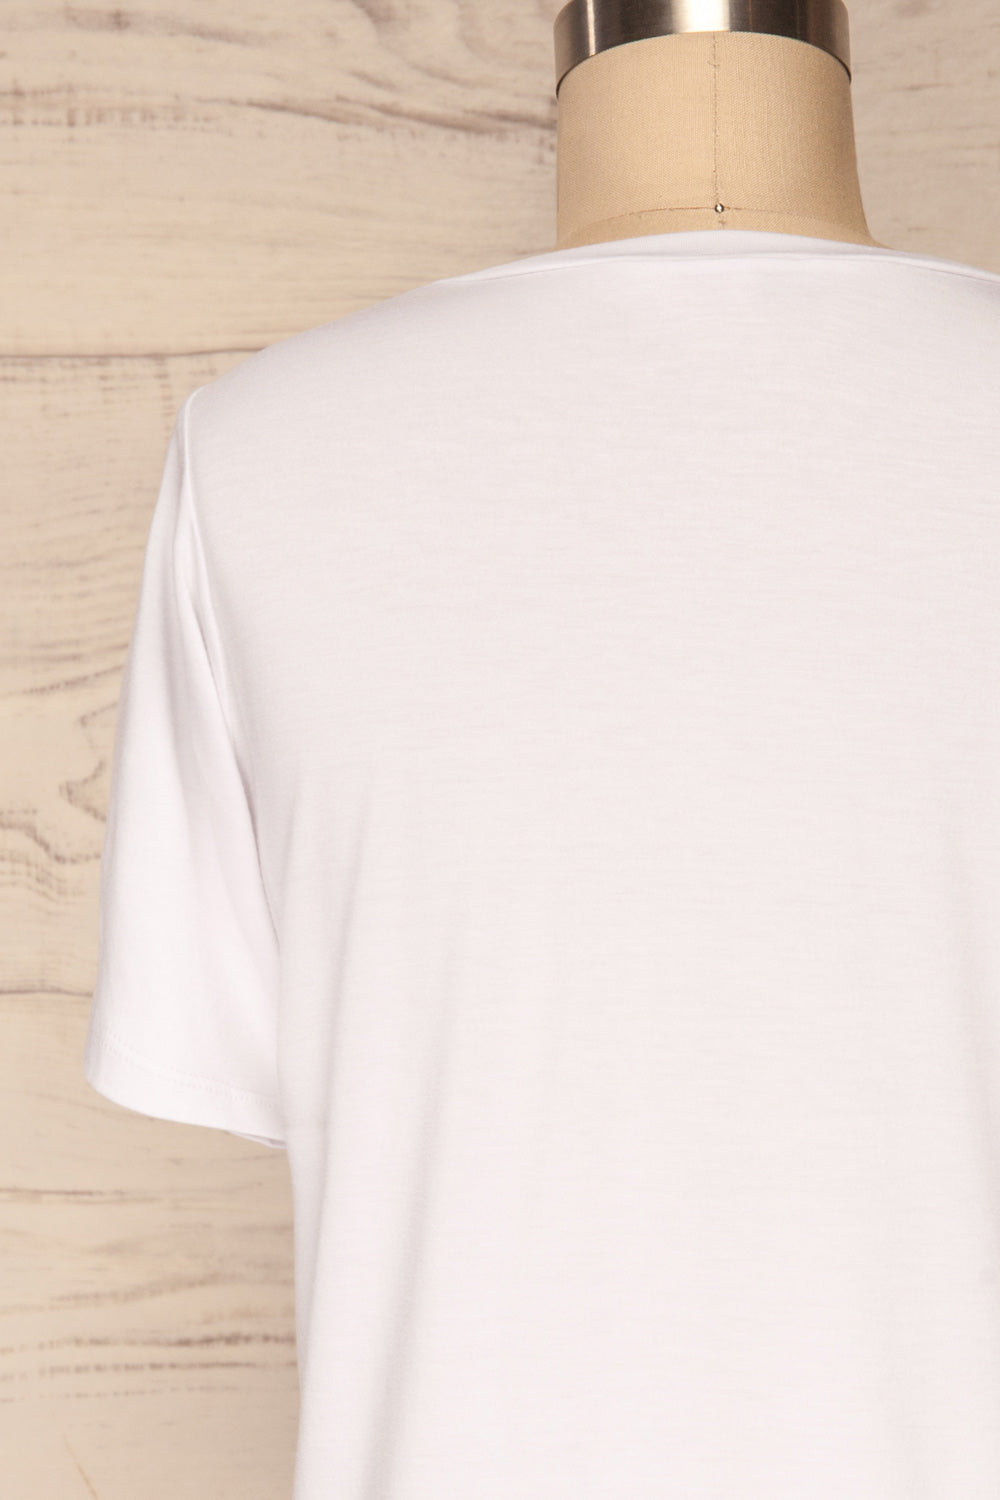 Hastings White Short Sleeved T-Shirt | La Petite Garçonne 6